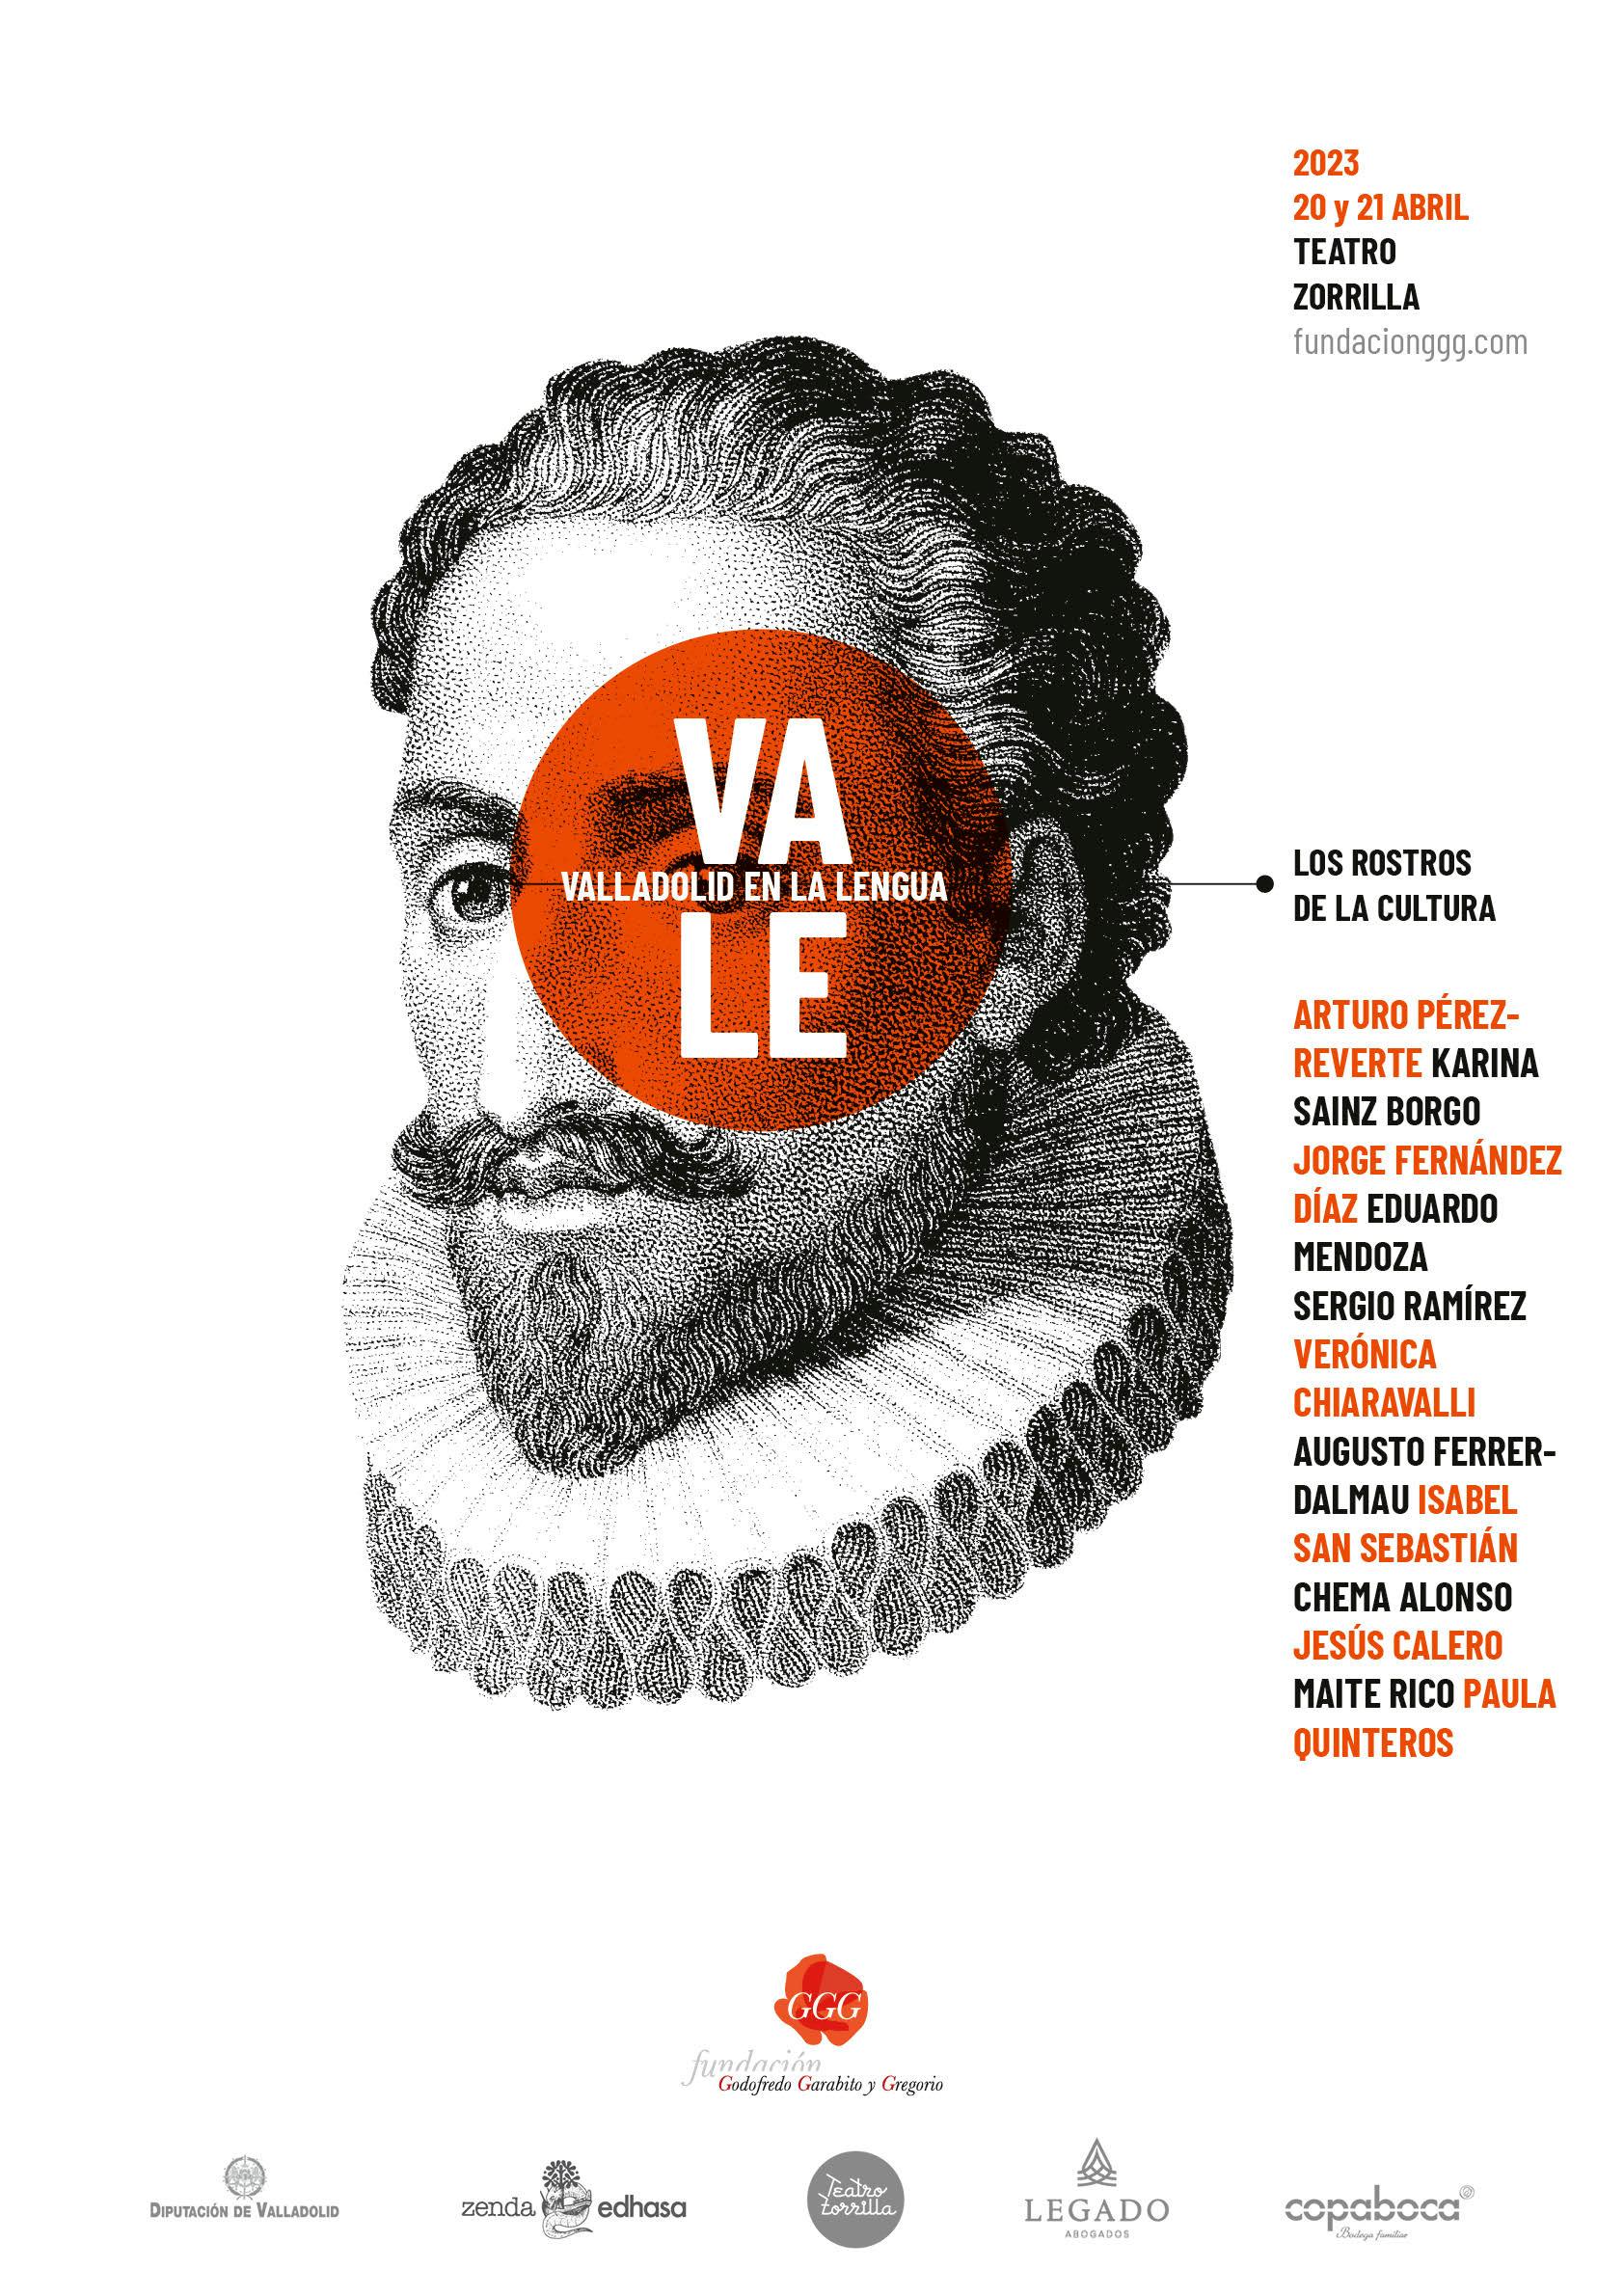 “Valladolid en la lengua” llenará el Teatro Zorrilla con algunas de las mejores voces de la cultura de España e Iberoamérica 